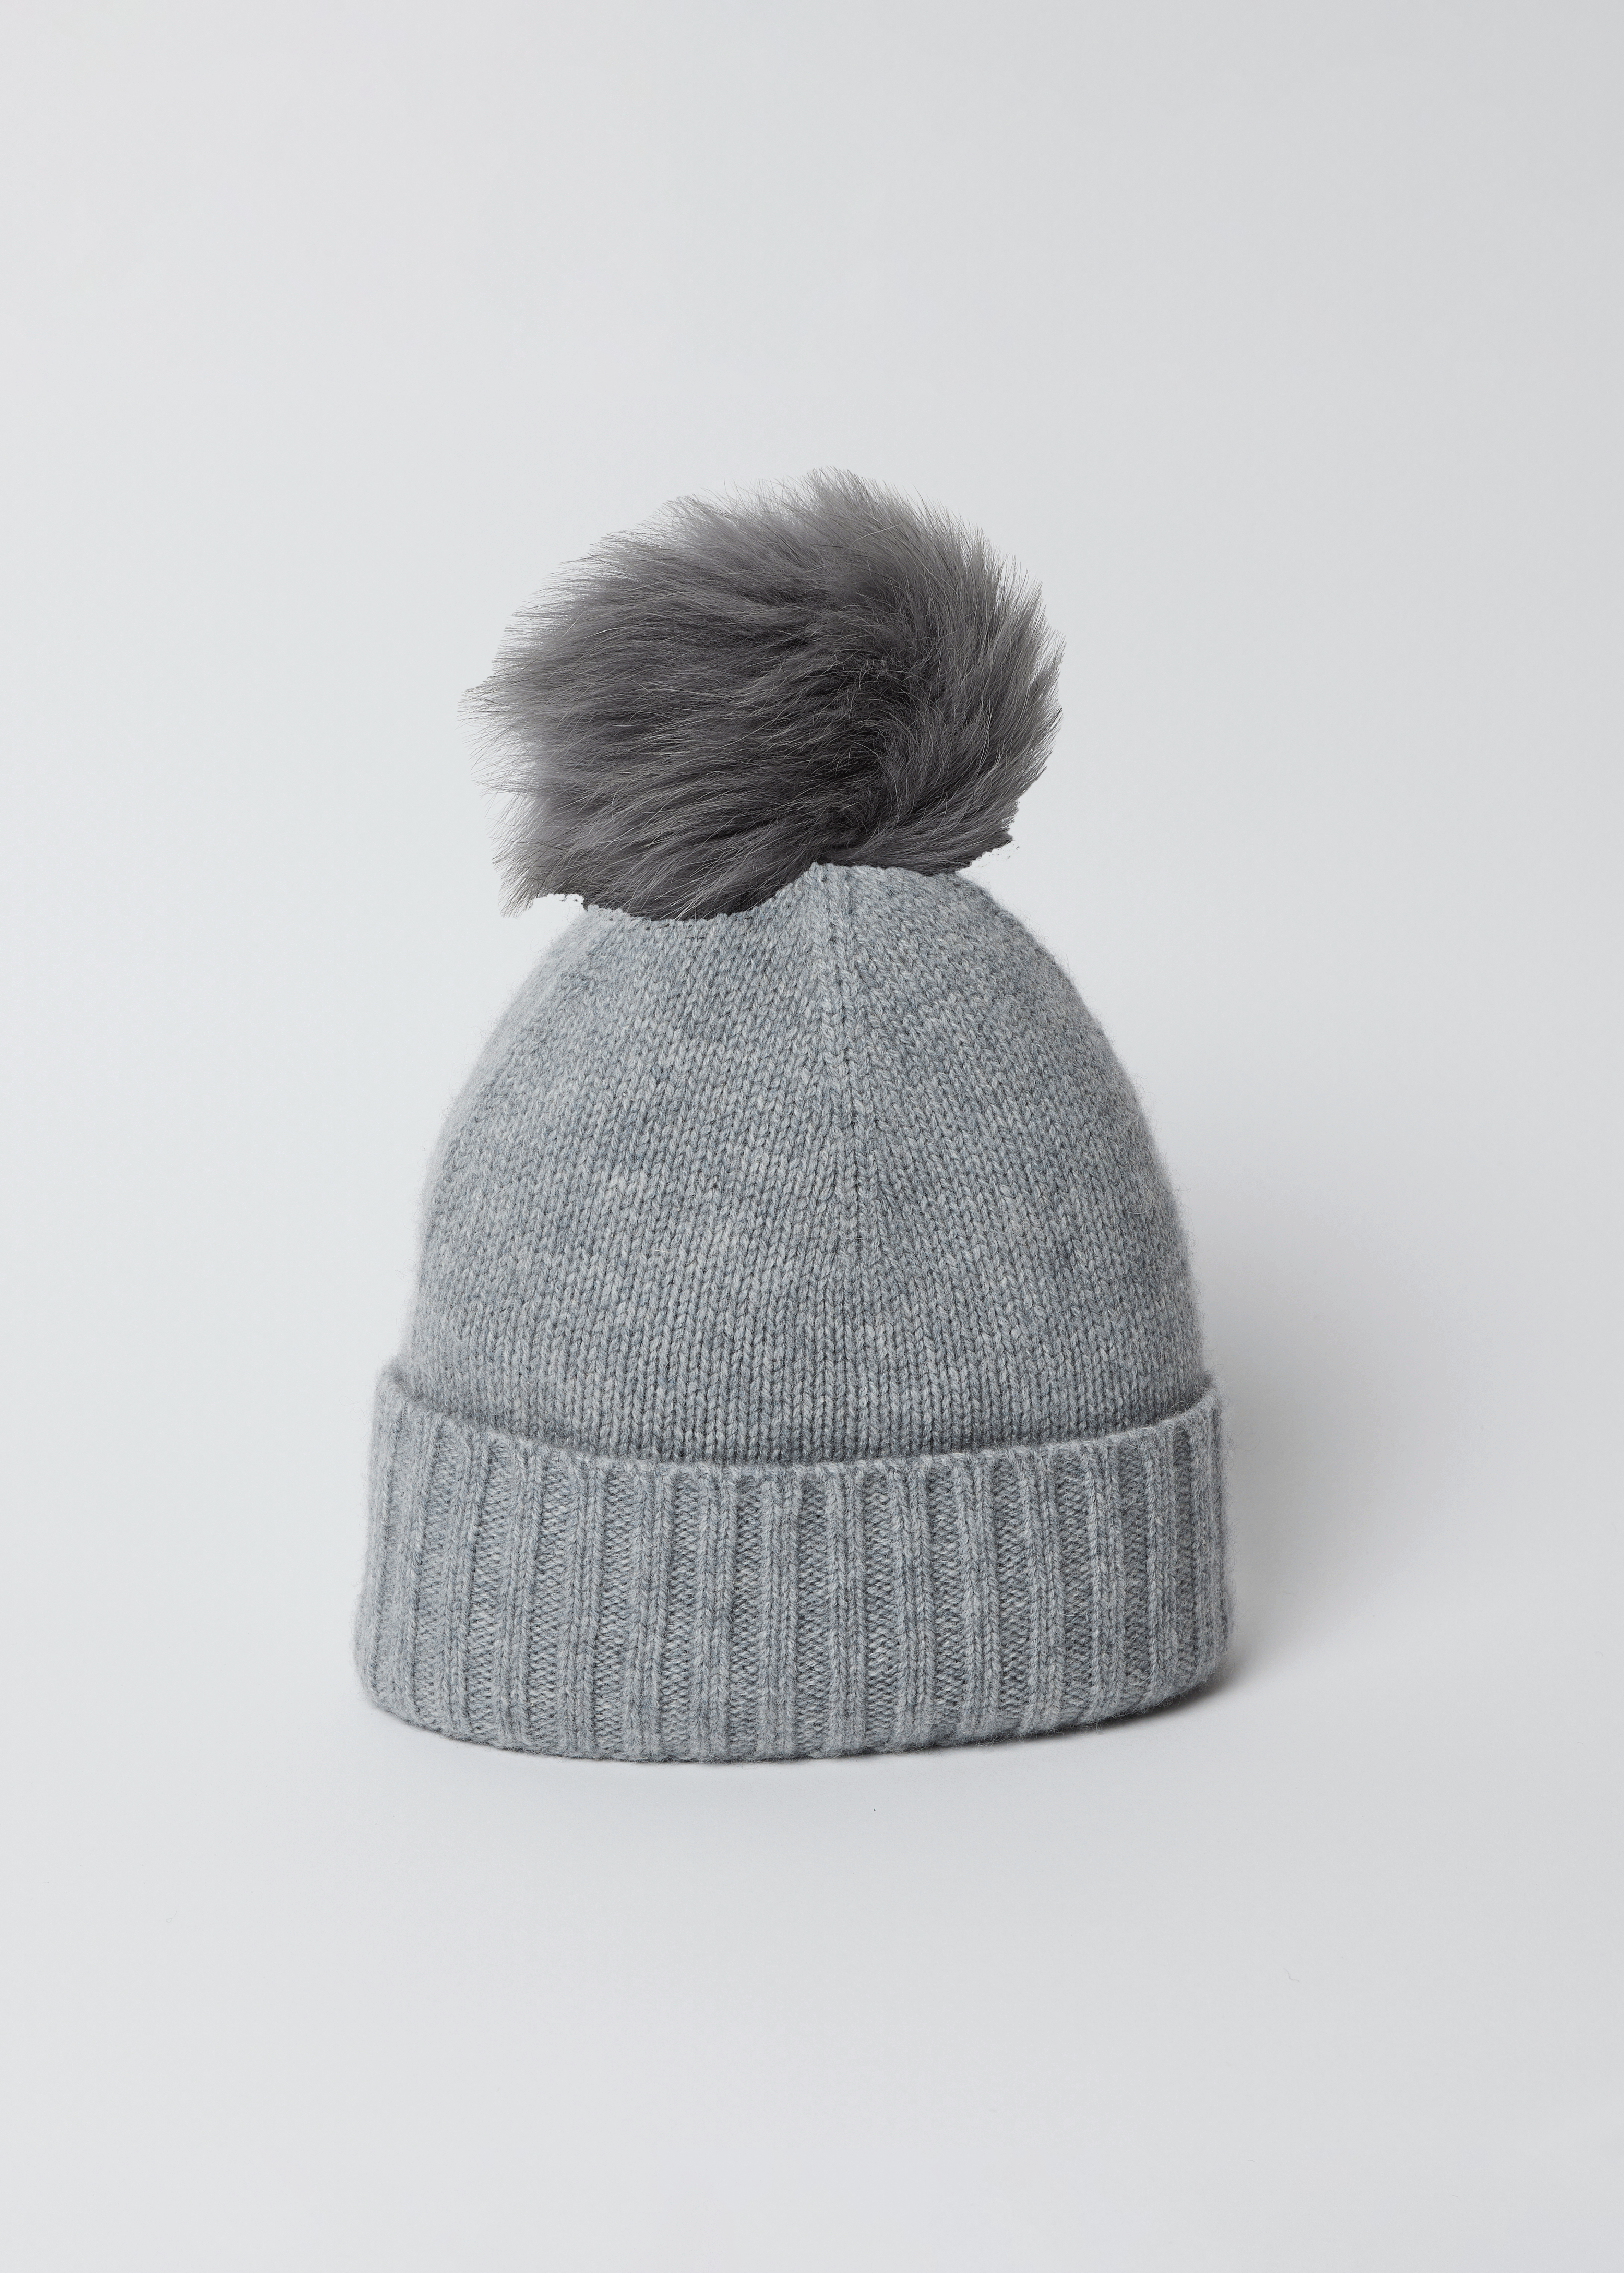 Grey New – Cashmere Hat Attack Beanie- York Steel Slouchy Cuff